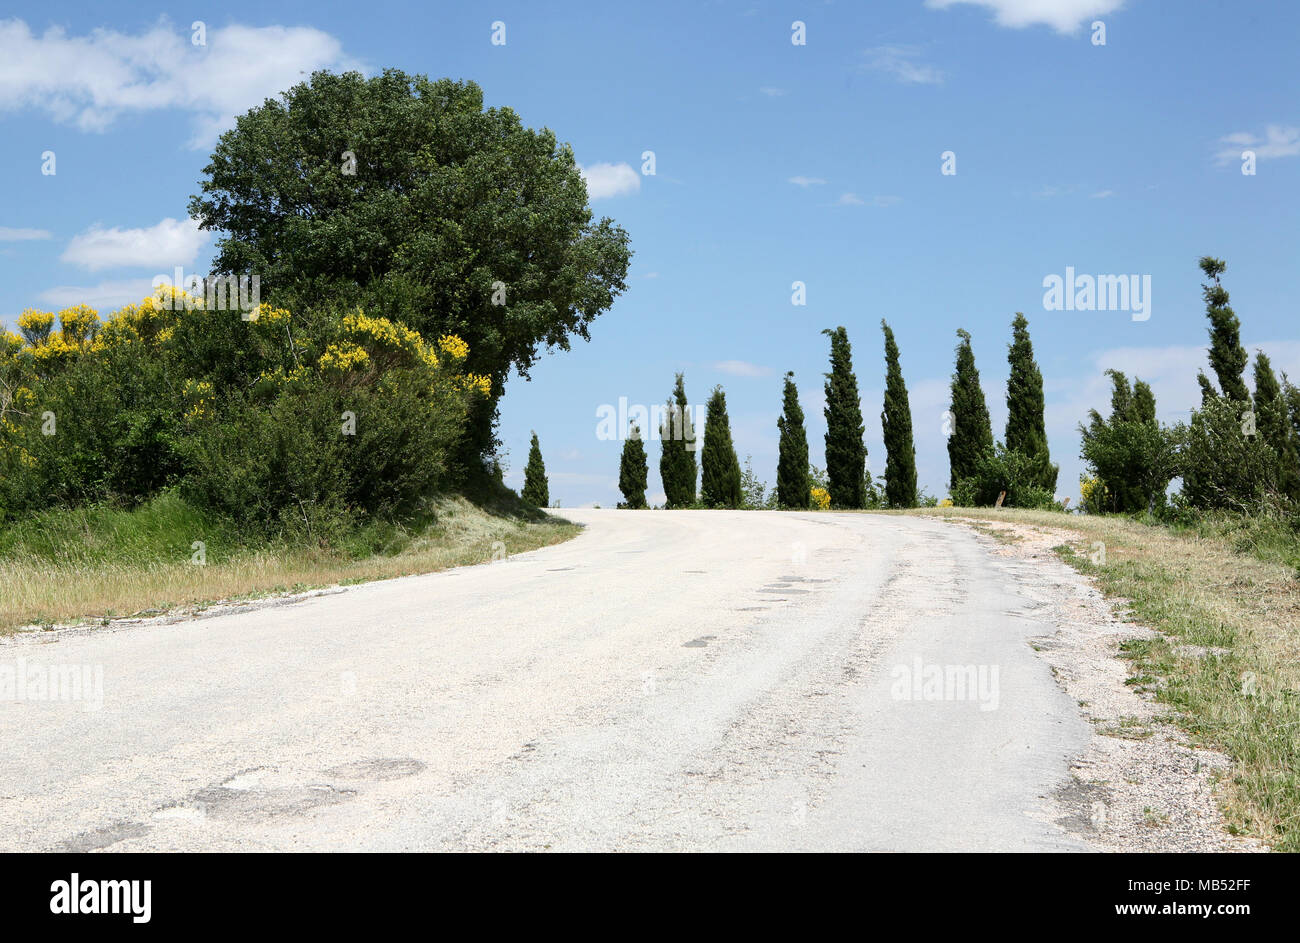 Petite route de montagne avec des cyprès Banque D'Images